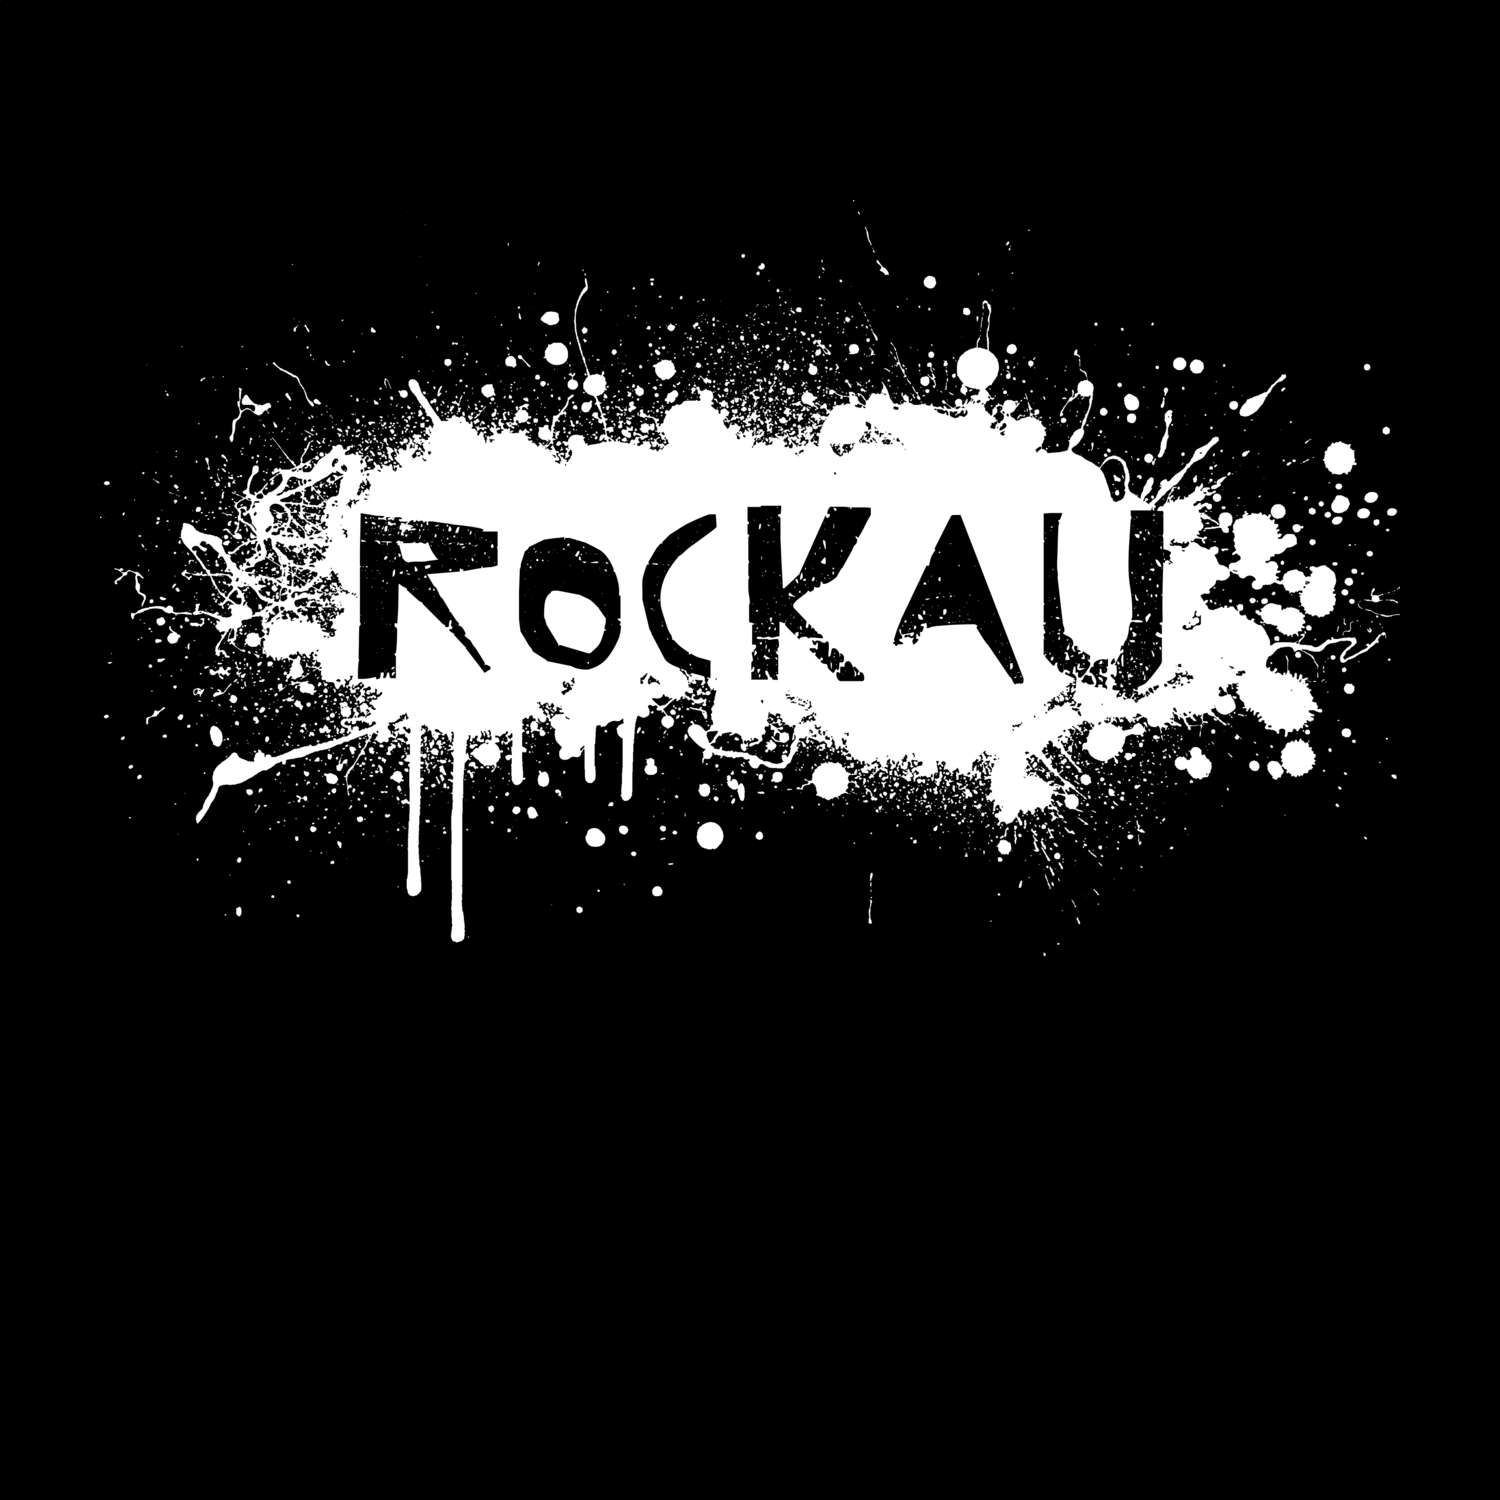 Rockau T-Shirt »Paint Splash Punk«